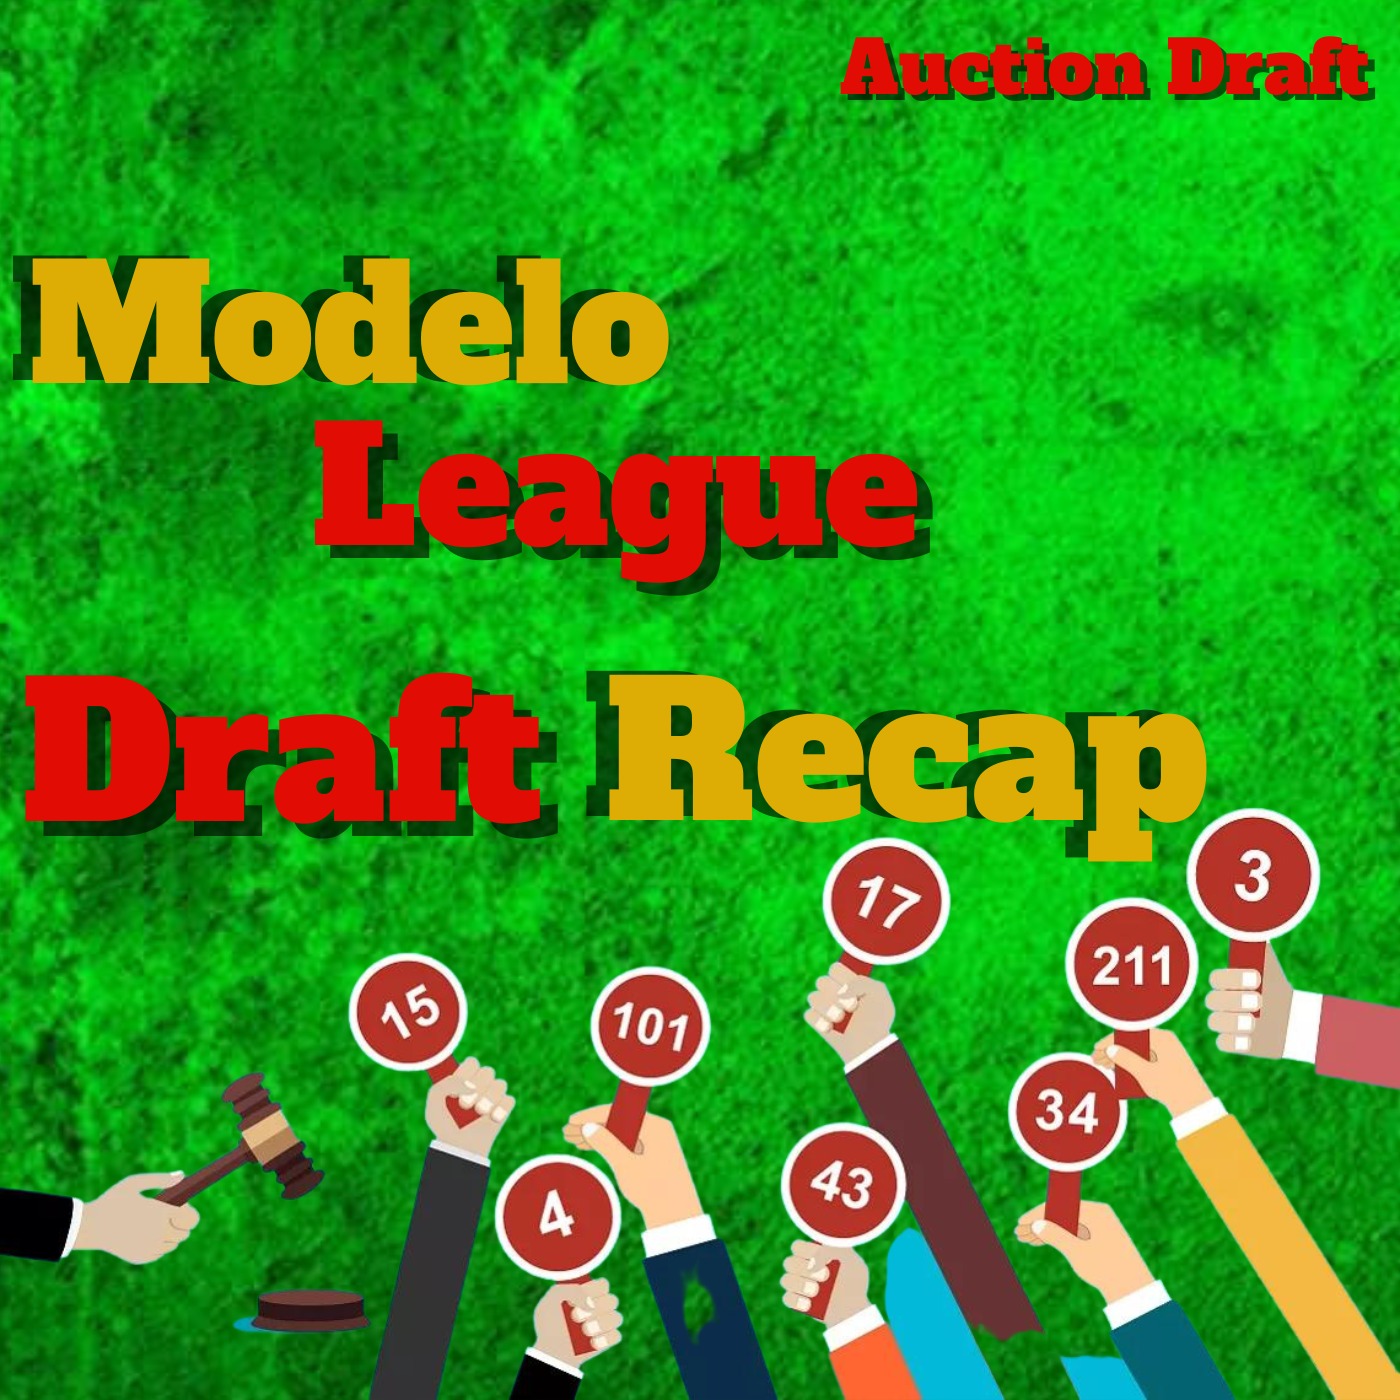 Modelo League Draft Recap | Fantasy Football 2022